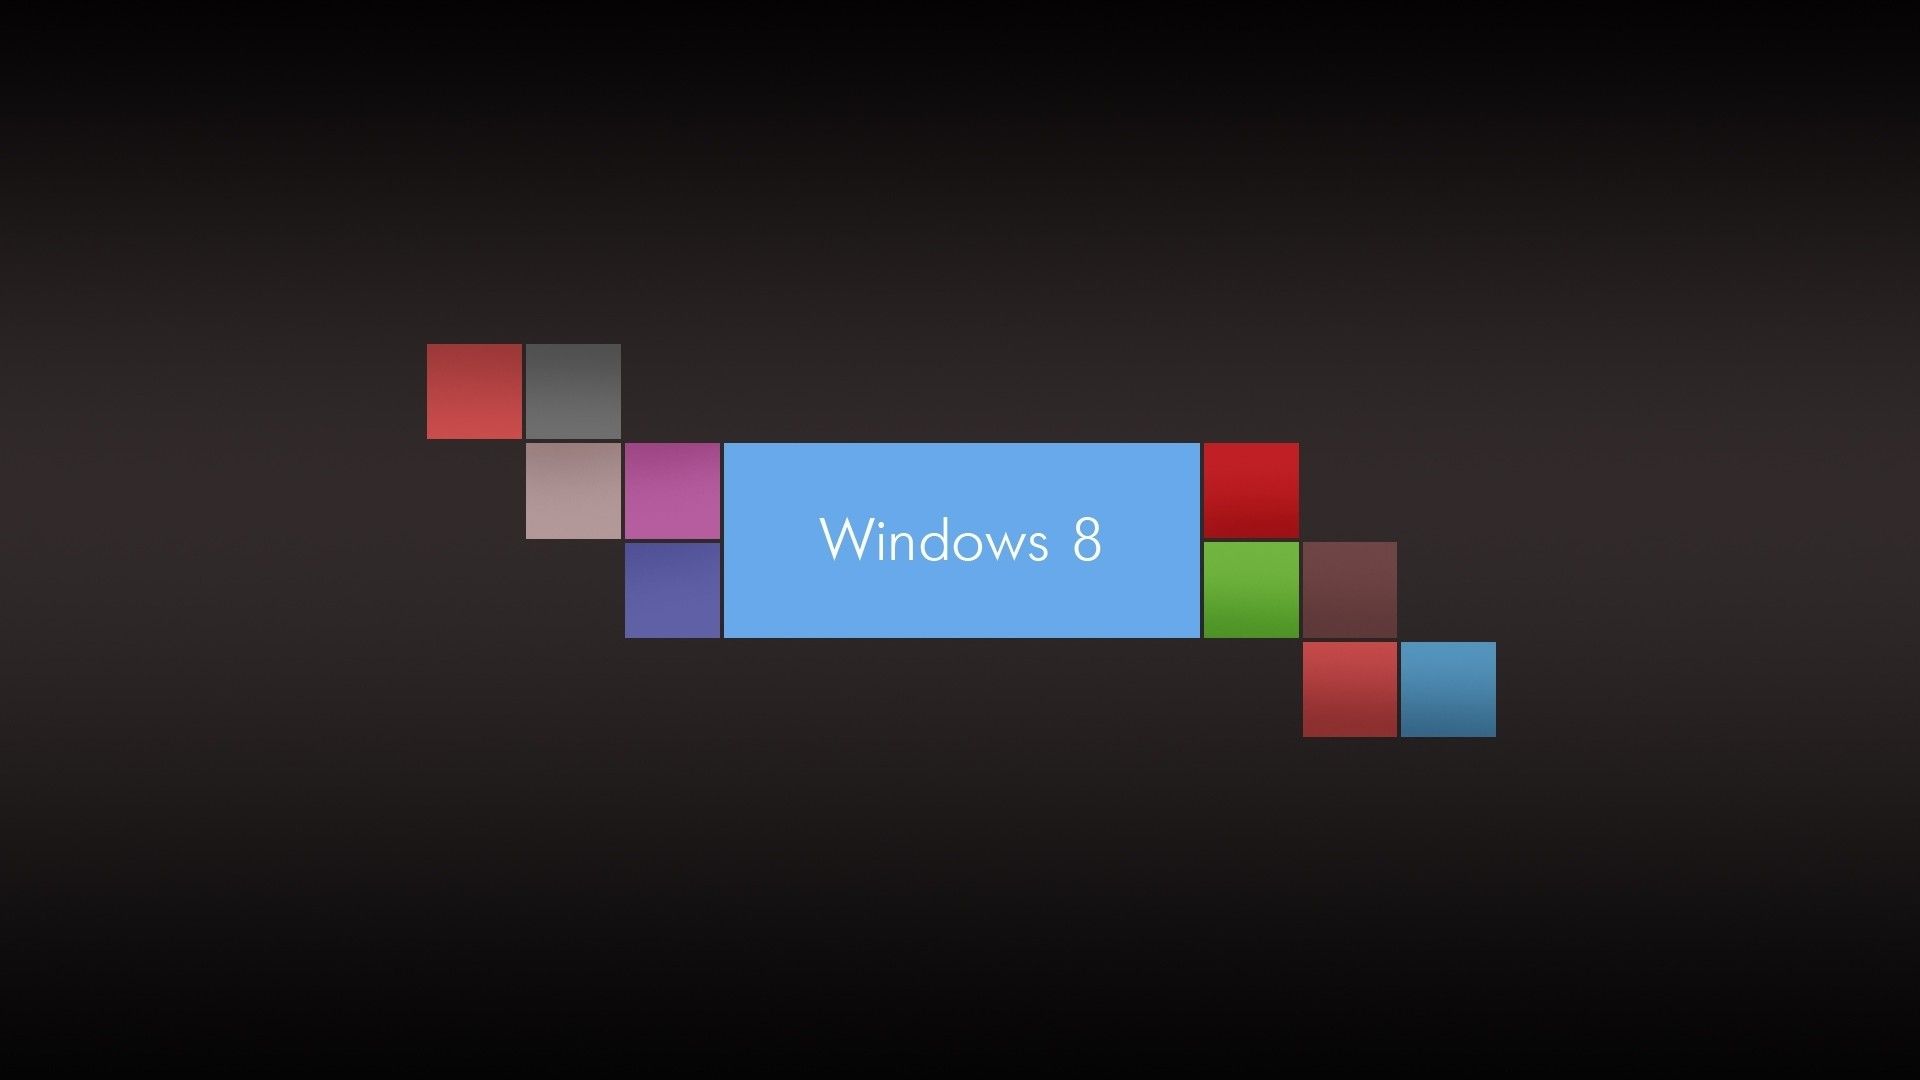 Windows 8 Logo And Brands Computer Wallpaper H Wallpaper